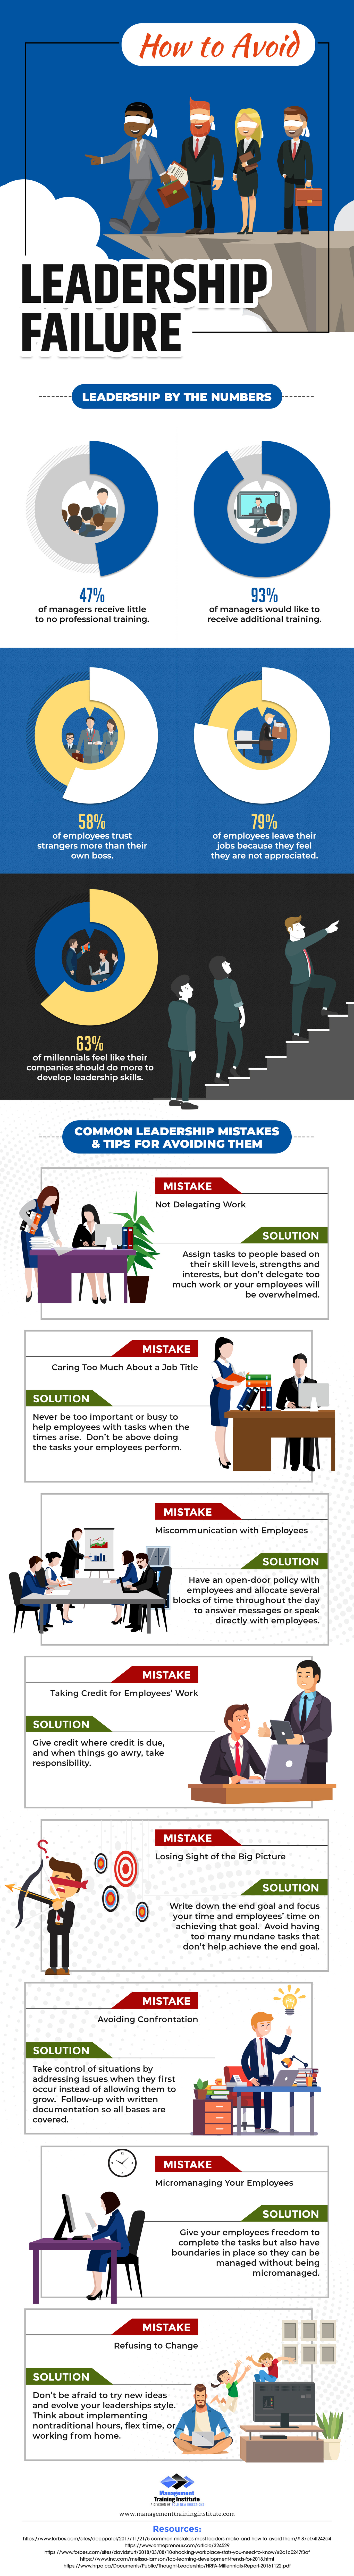 How to Avoid Leadership Failure